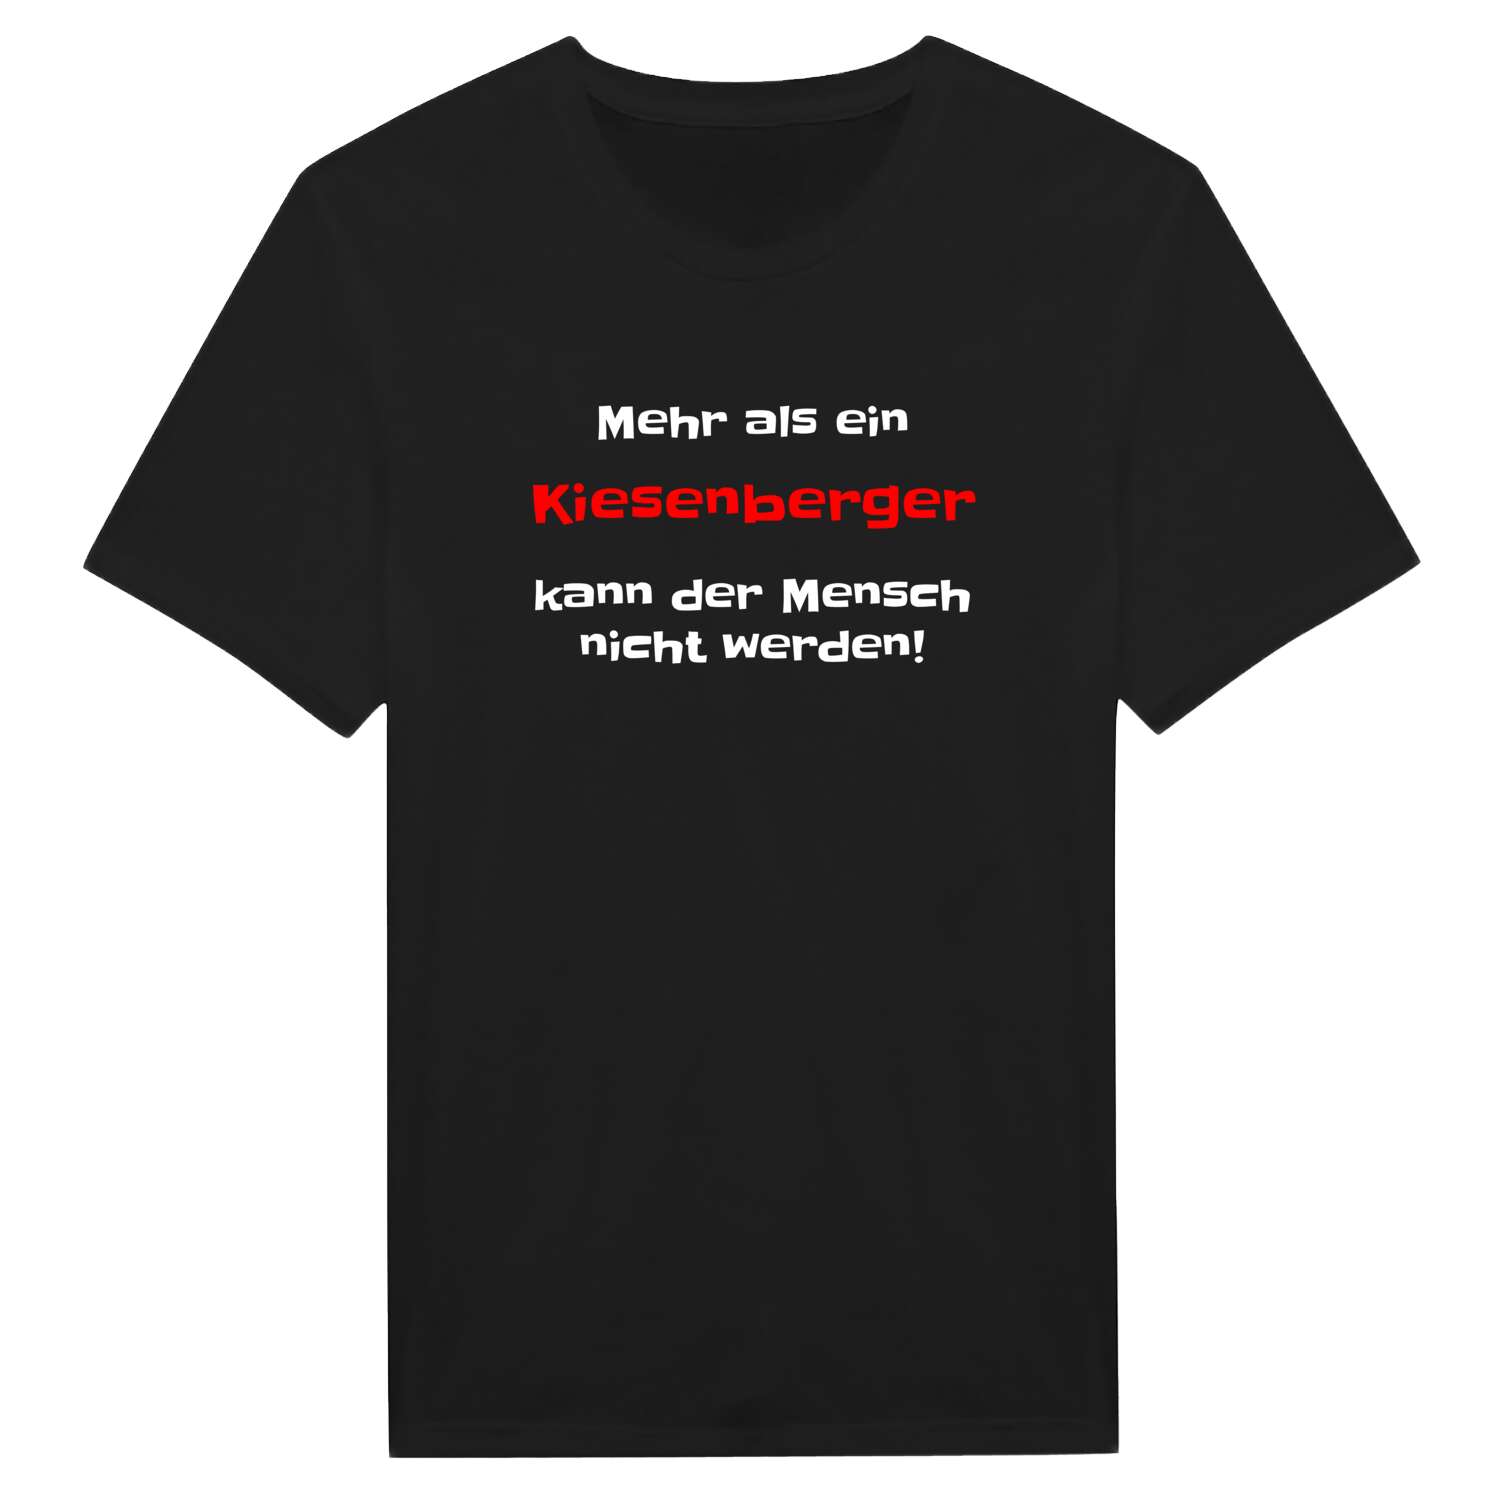 Kiesenberg T-Shirt »Mehr als ein«